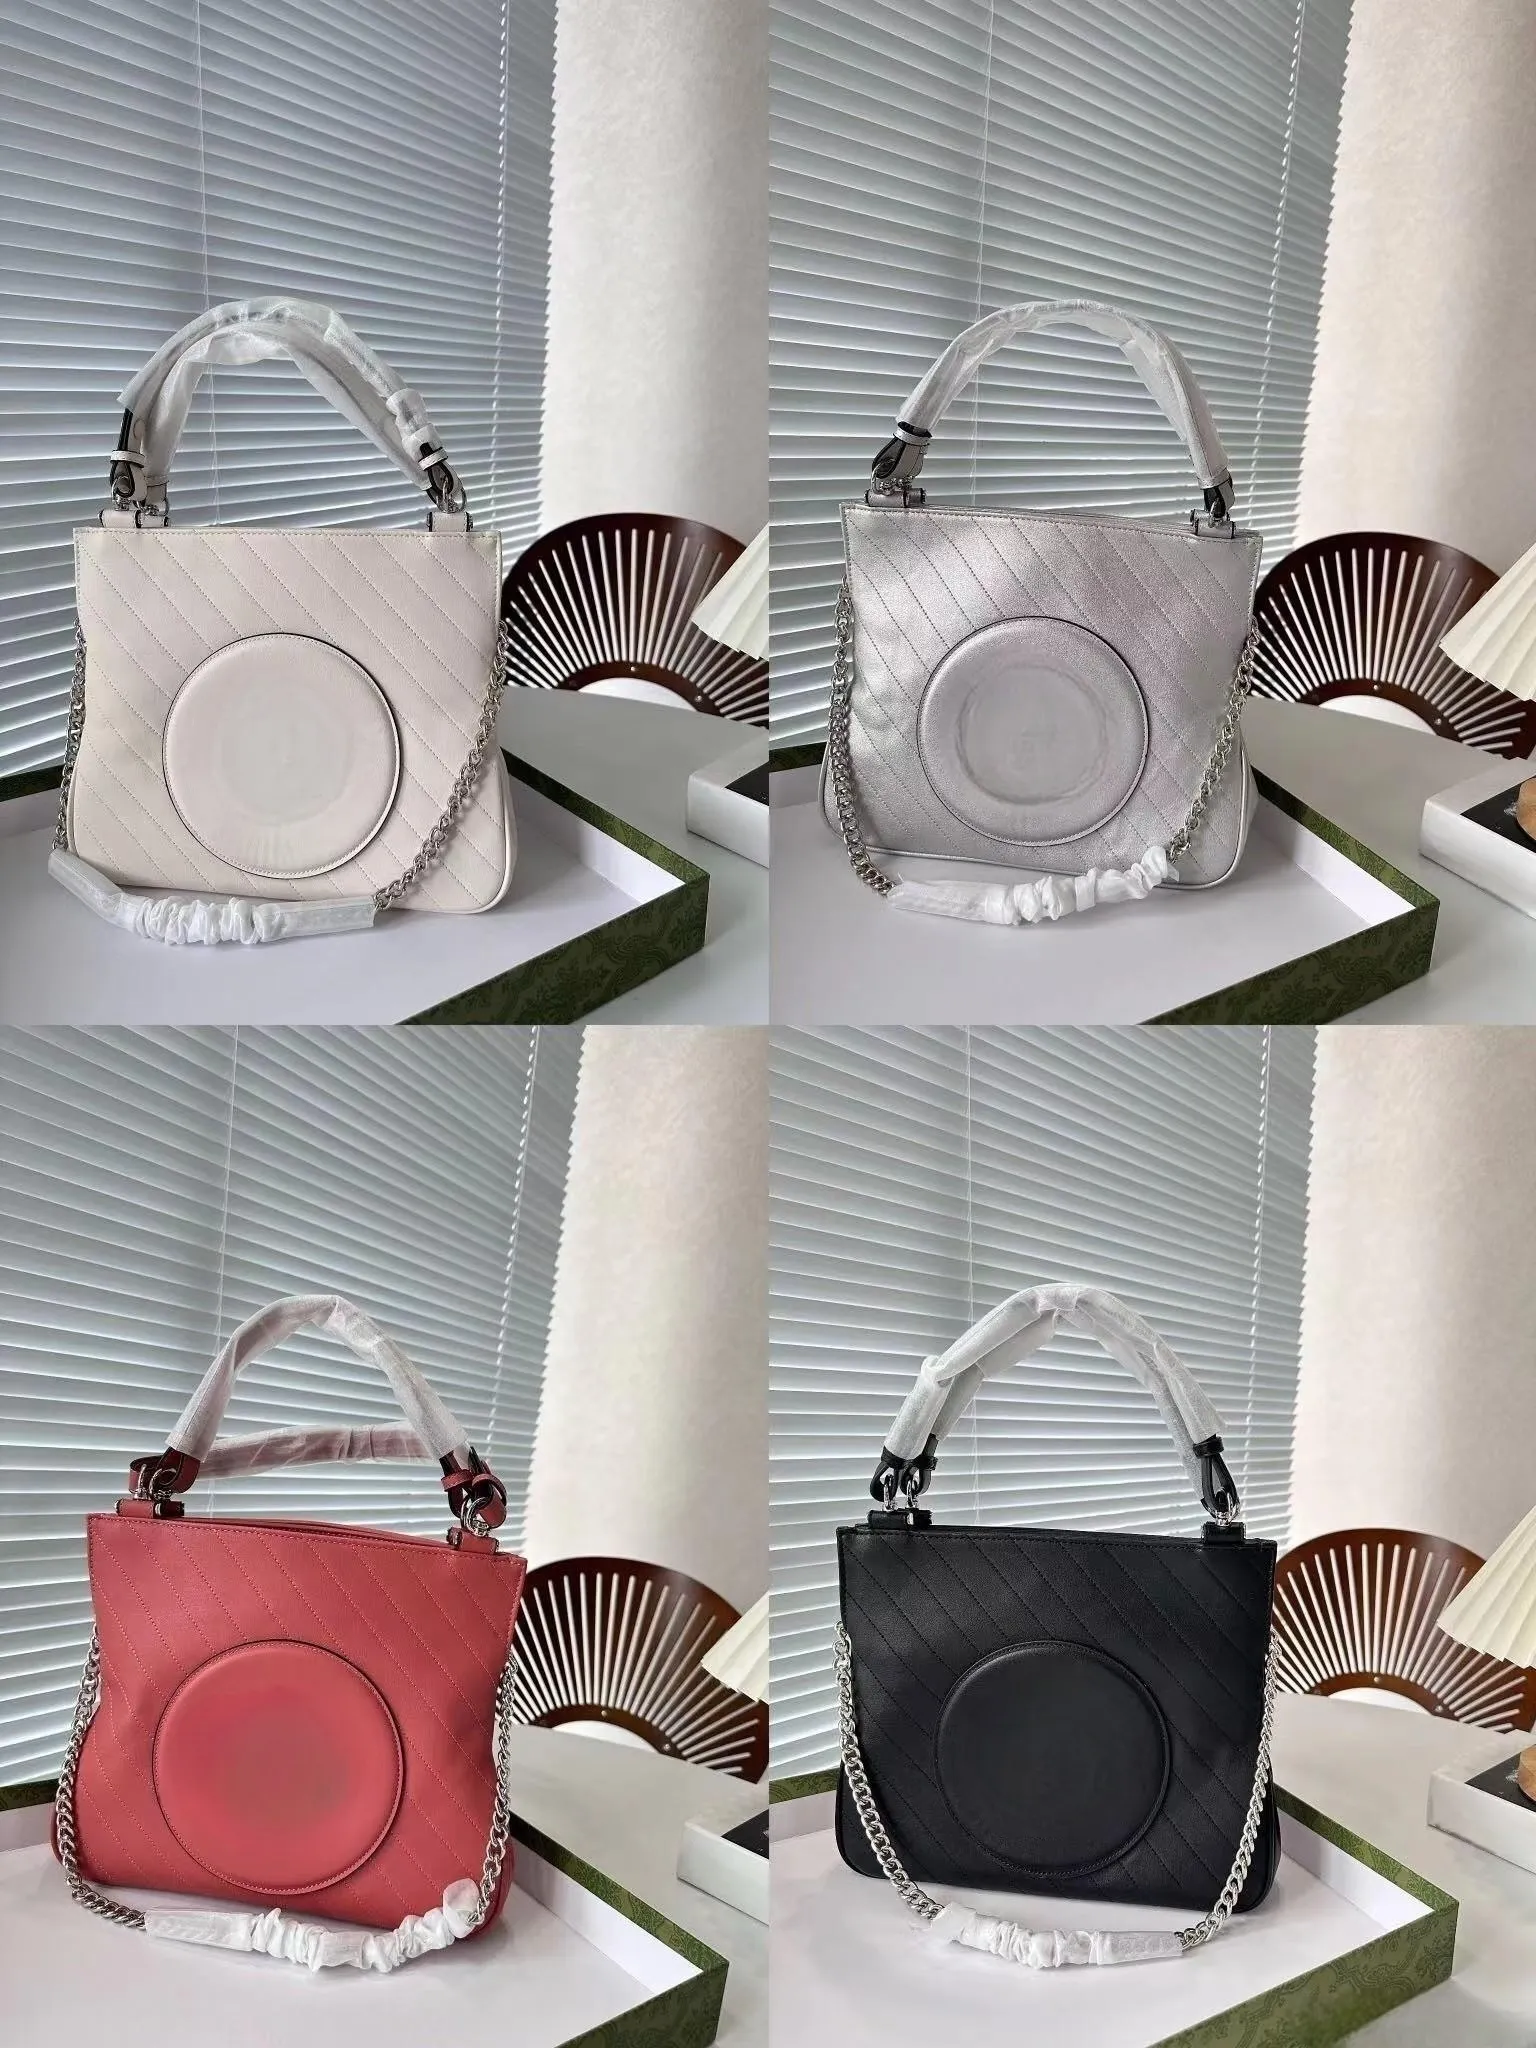 Vielseitige Designer-Einkaufstasche von BLONDIE mit großem Fassungsvermögen, hergestellt aus hochwertigem Echtleder, silberne Textur, Too Cool, mehrere Trägermethoden, vielseitig einsetzbar, eine Tasche